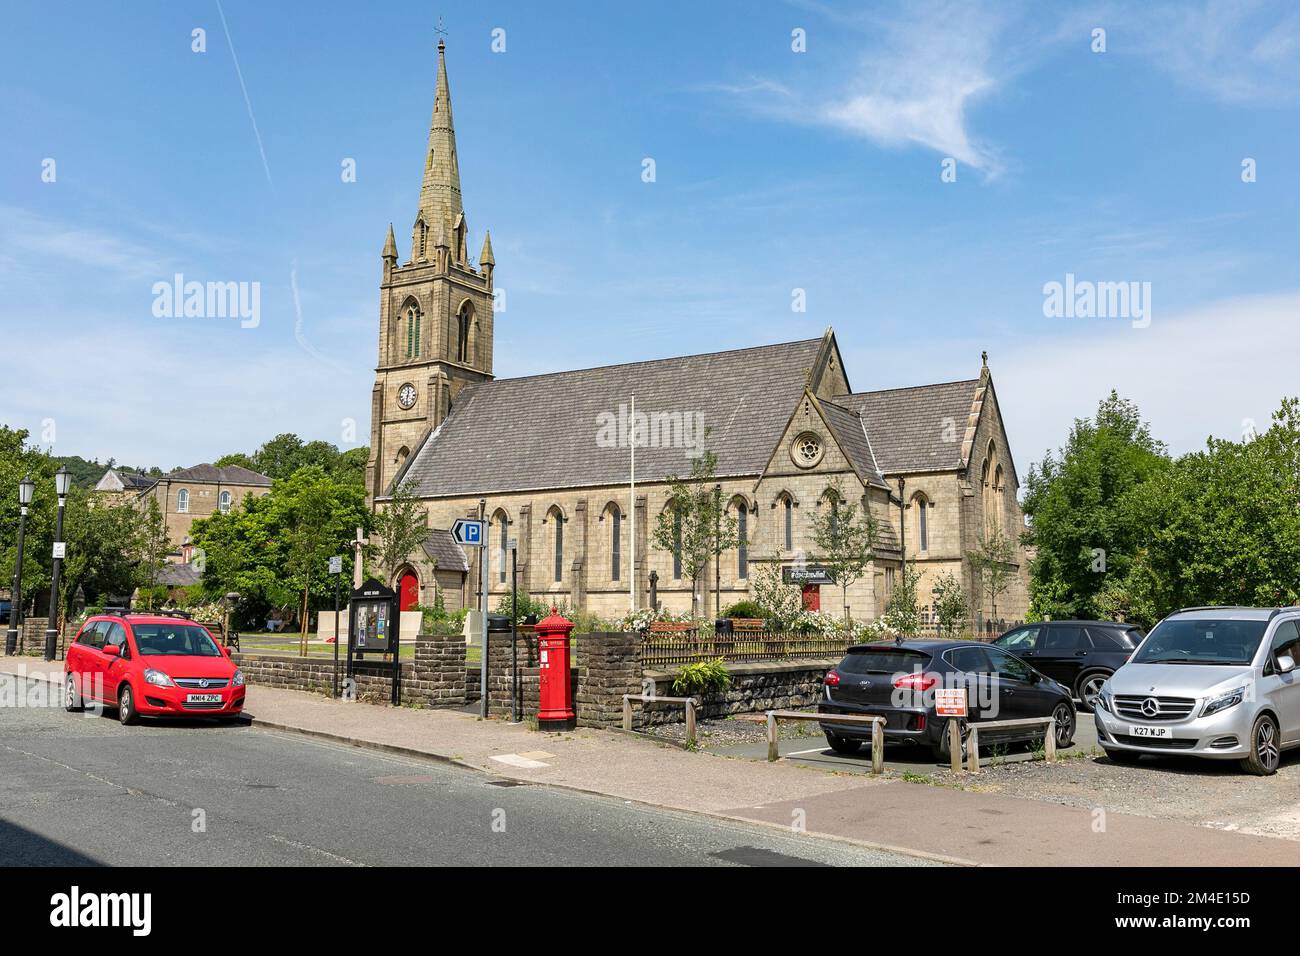 St Paul's Kirche ist eine denkmalgeschützte Kirche aus dem 19. Jahrhundert in der Bridge Street in Ramsbottom, Großraum Manchester, England, Großbritannien Stockfoto